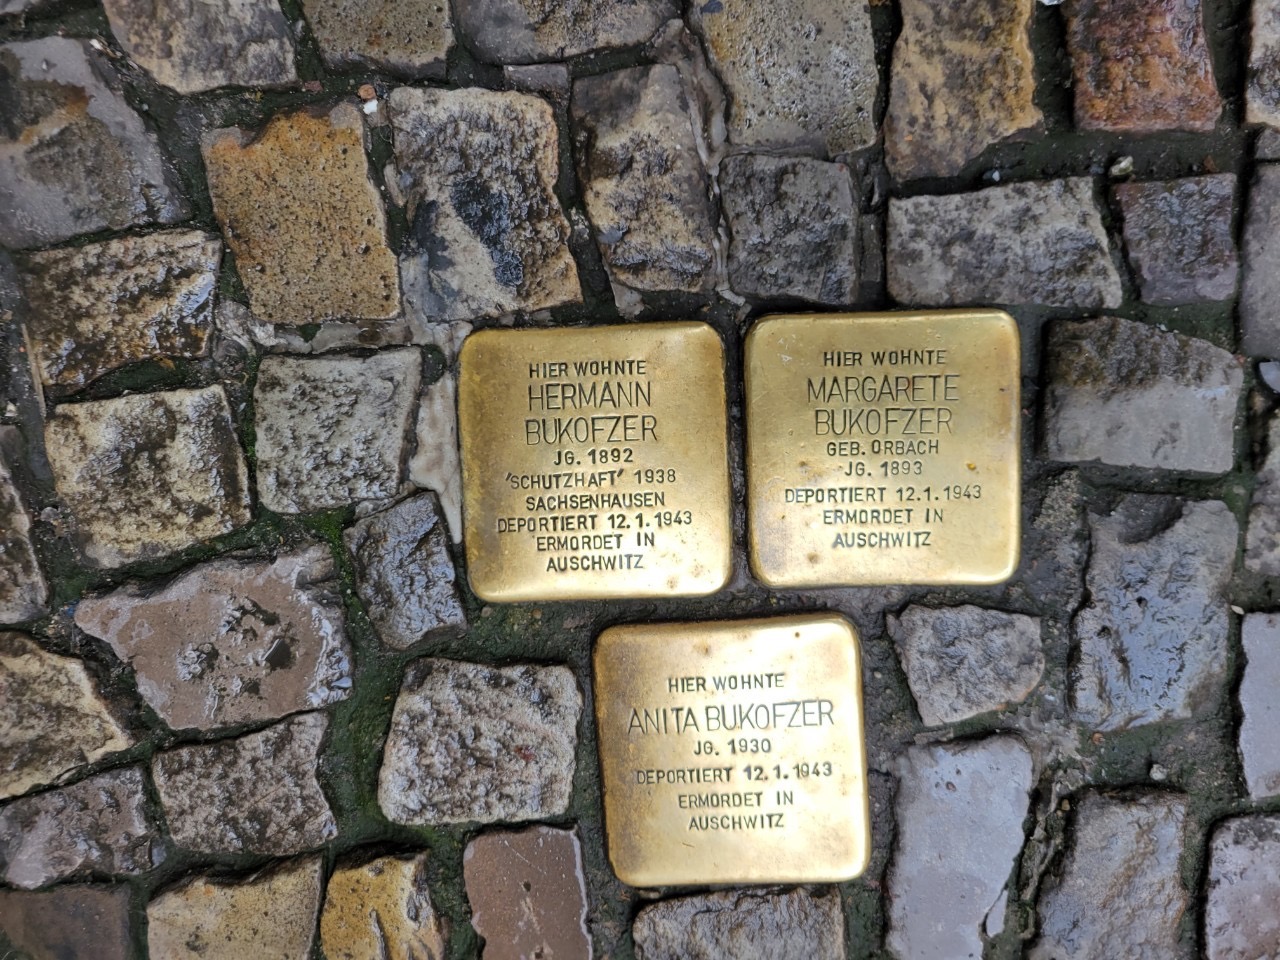 全國禱告網絡牧者前往德國參訪，旅程中看到當地藝術家以「絆腳石計畫」公共藝術作品記念被德國納粹無辜屠殺的死難者。